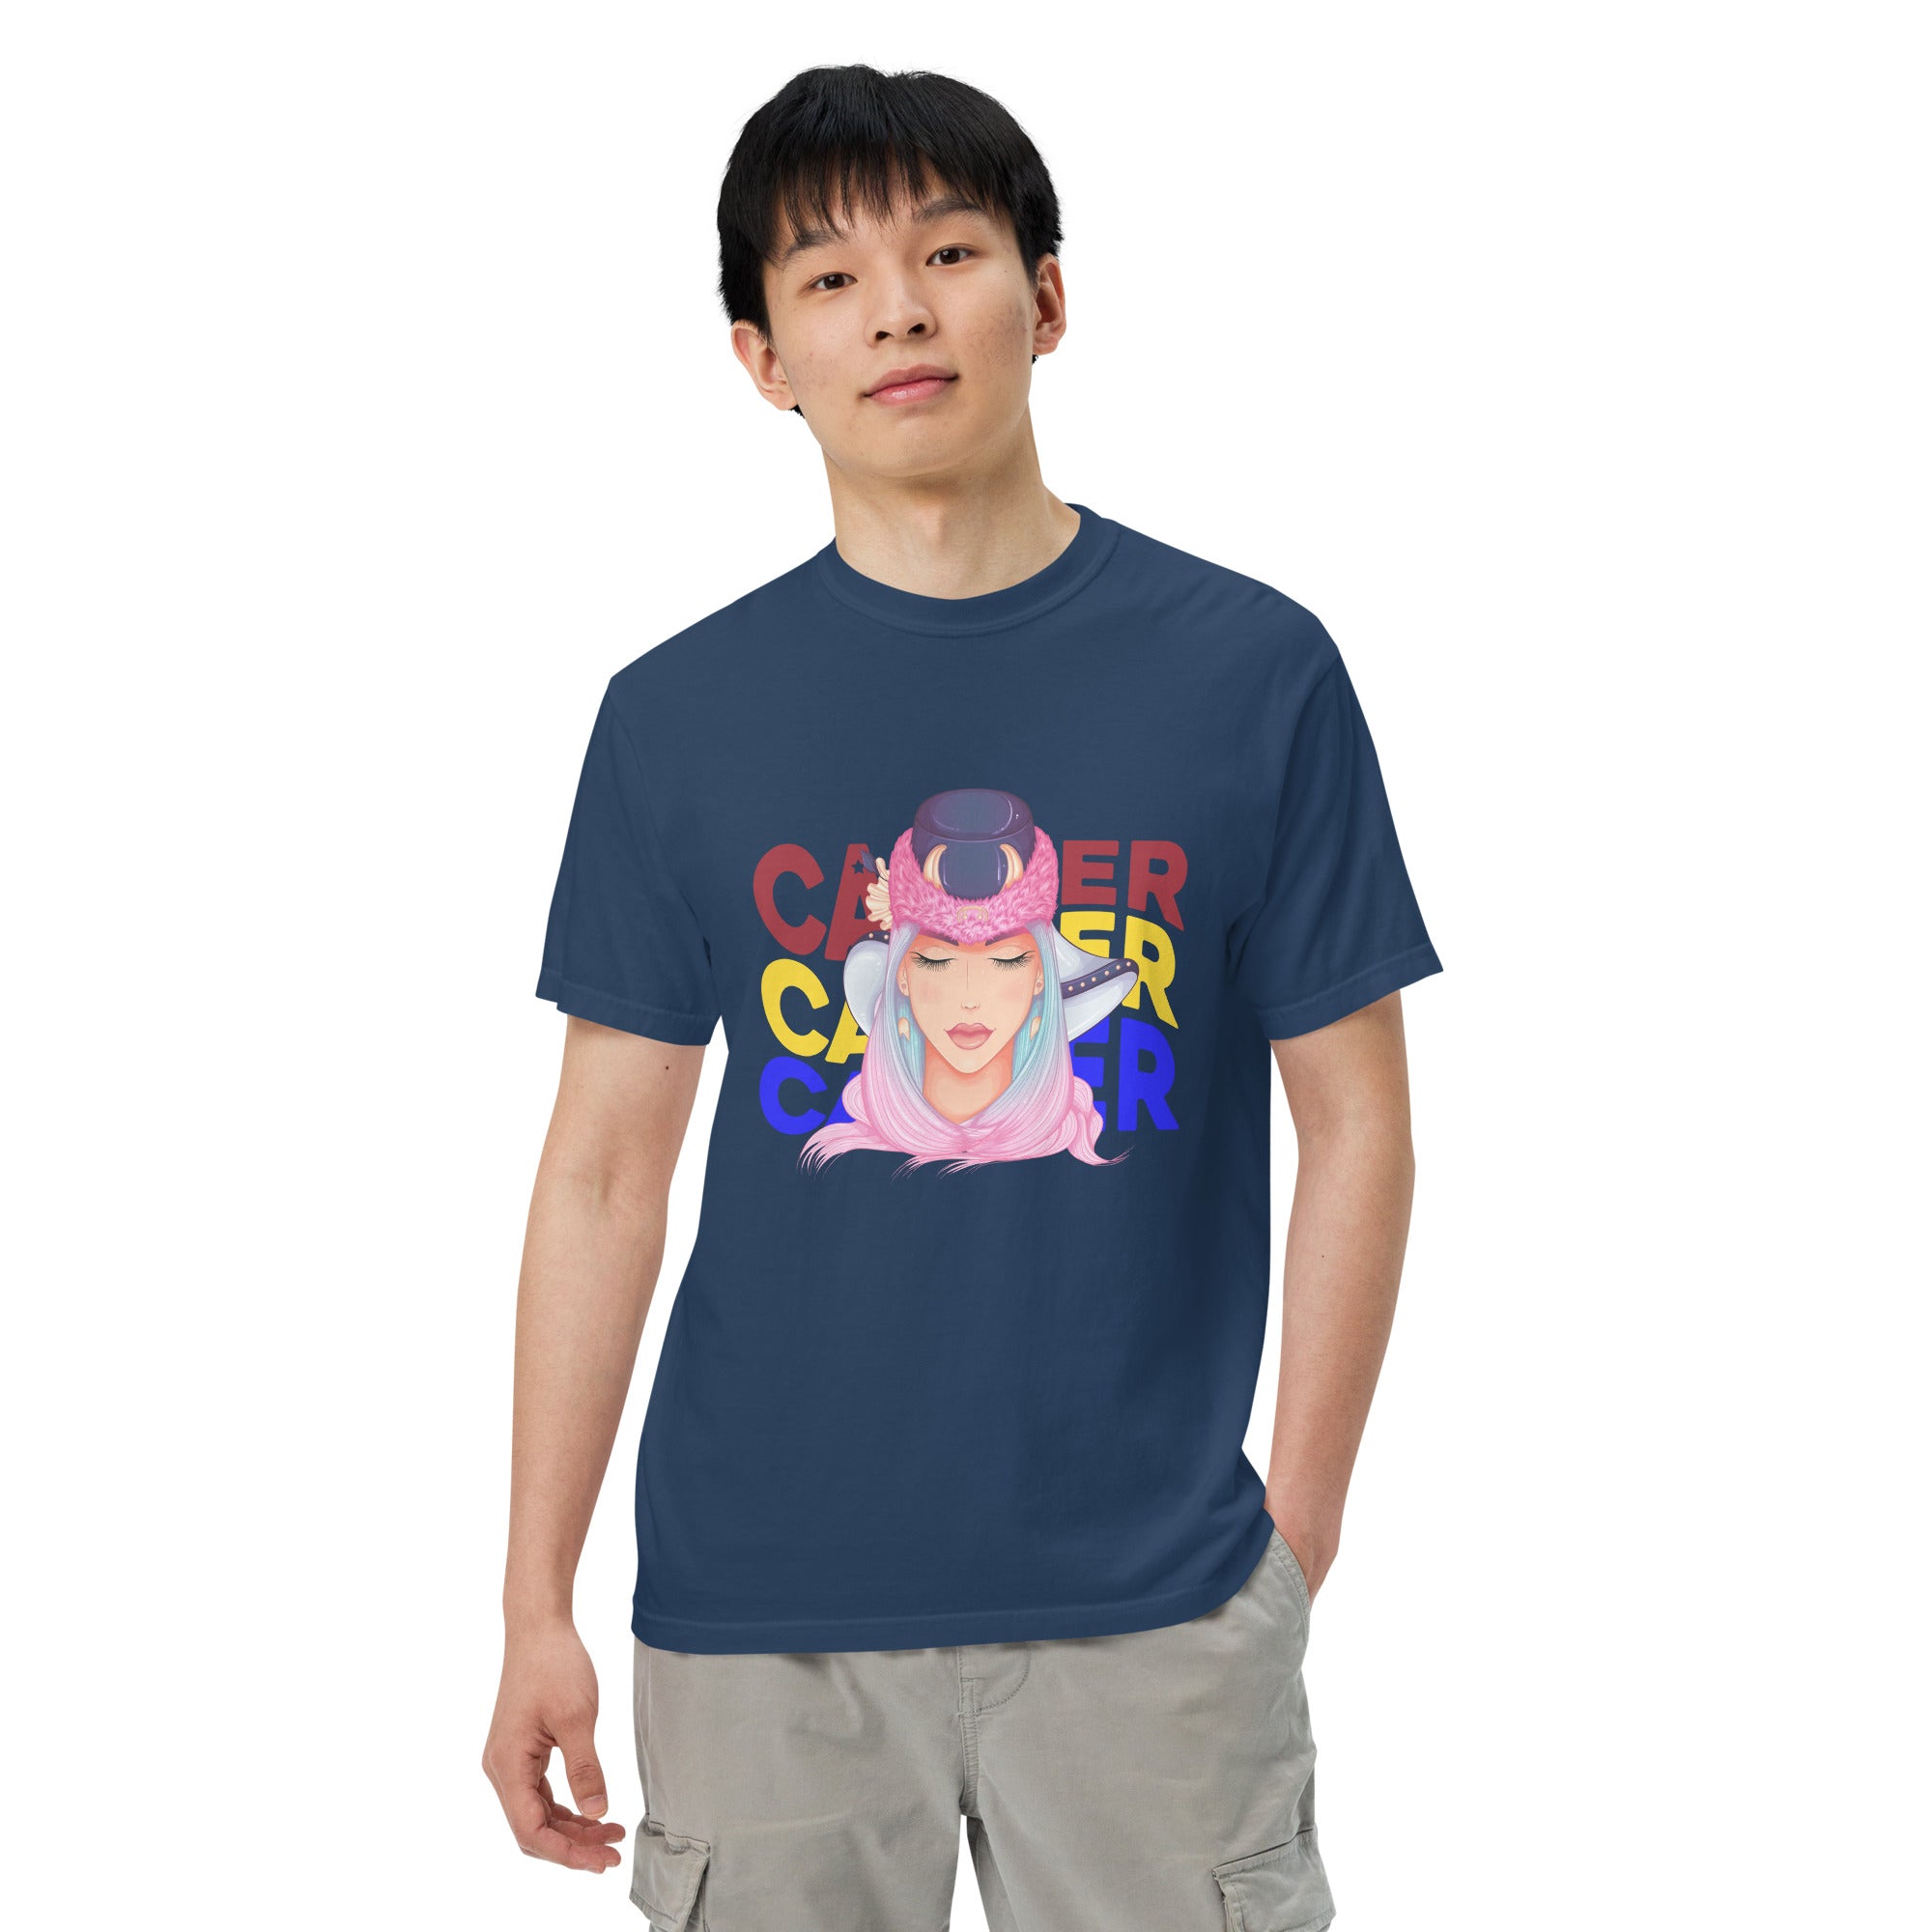 Cancer Unisex garment-dyed heavyweight t-shirt